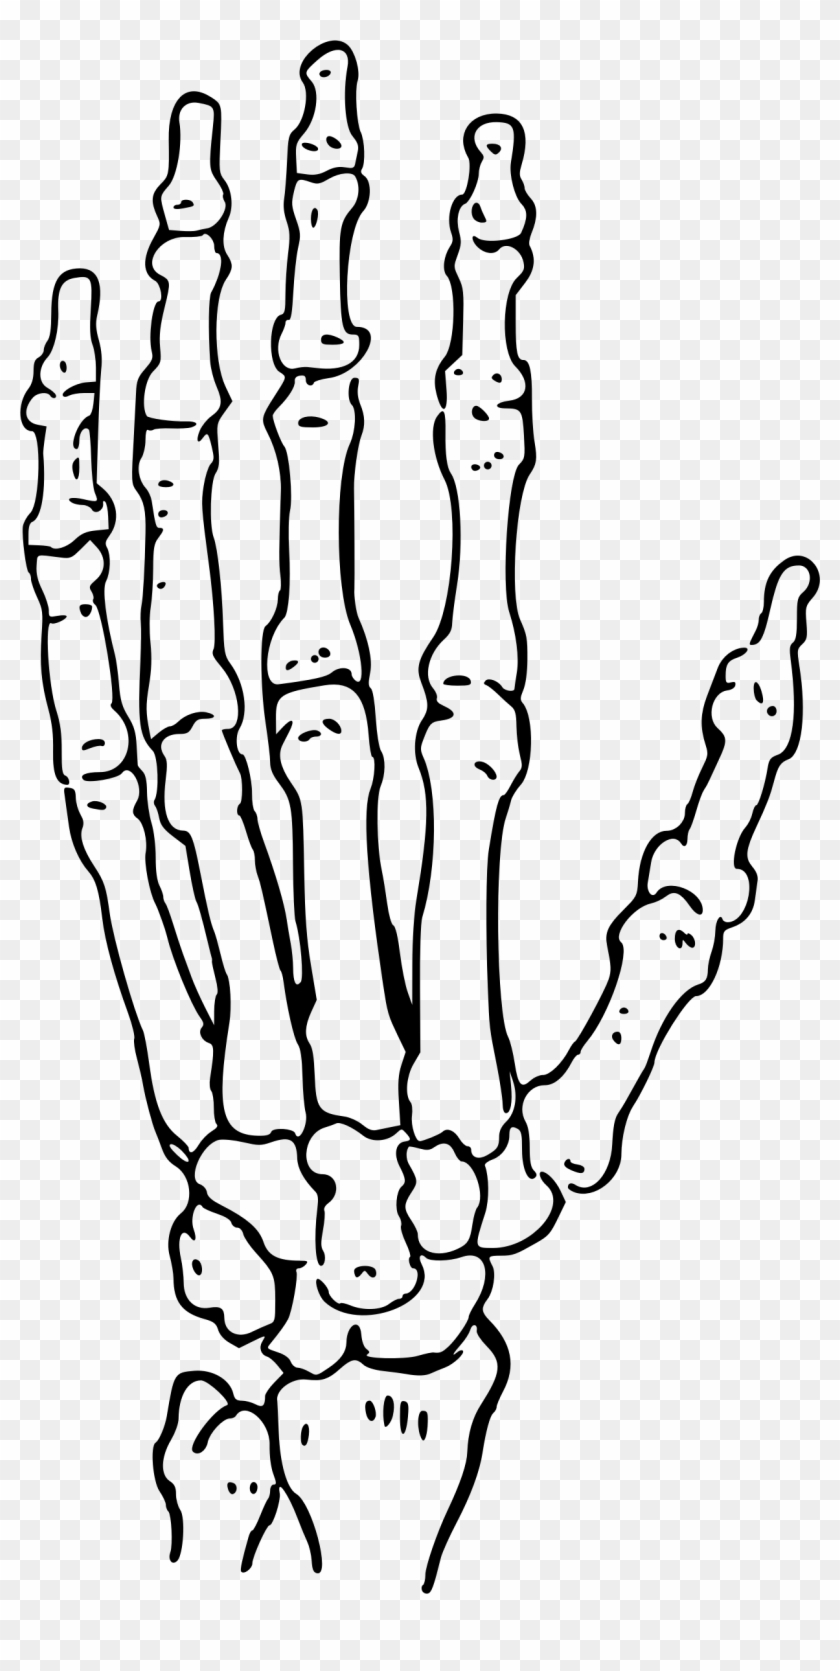 Big Image - Skeleton Hand Clipart #1034104